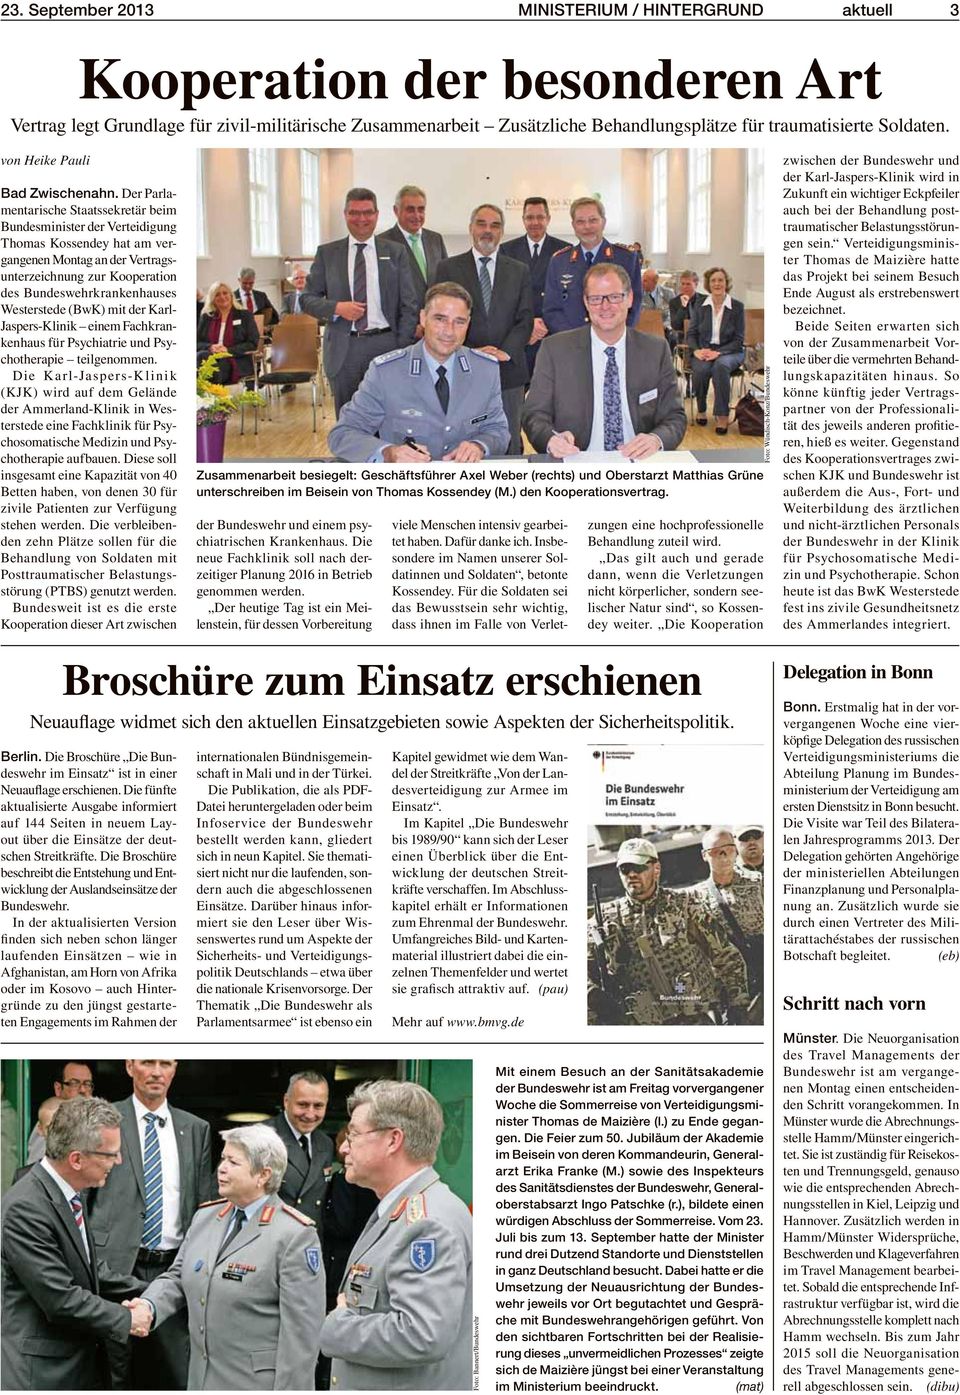 Der Parlamentarische Staatssekretär beim Bundesminister der Verteidigung Thomas Kossendey hat am vergangenen Montag an der Vertragsunterzeichnung zur Kooperation des Bundeswehrkrankenhauses